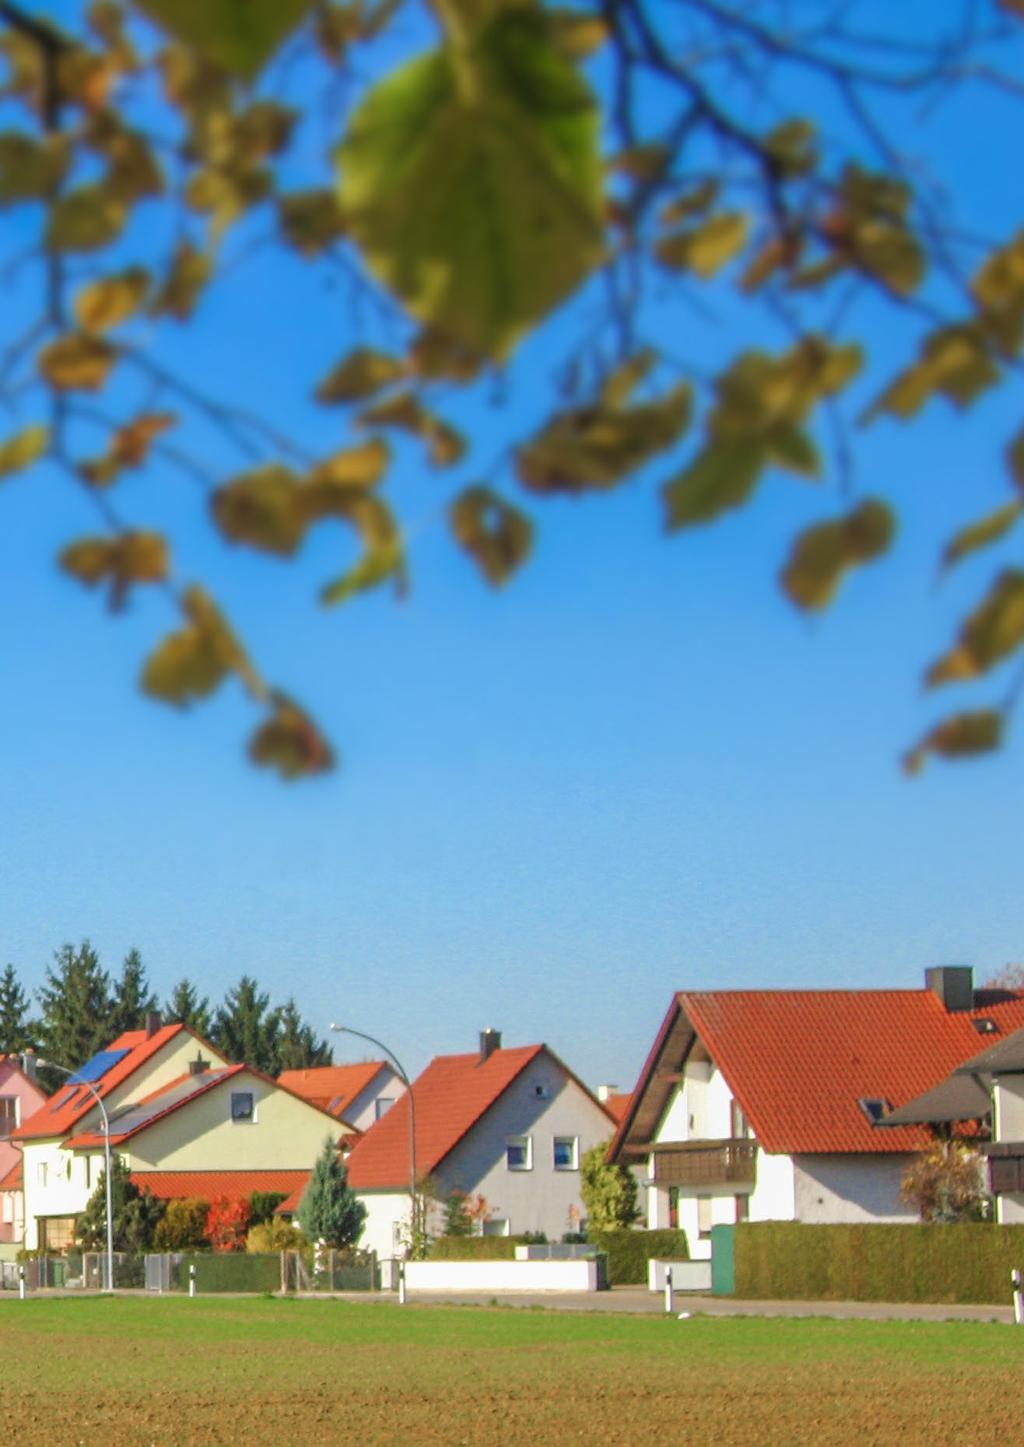 GELTUNGSBEREICH Der Mietspiegel gilt ausschließlich für nicht preisgebundene Mietwohnungen des freifinanzierten Wohnungsbaus im Wohnflächenbereich zwischen 30 m² und 150 m².